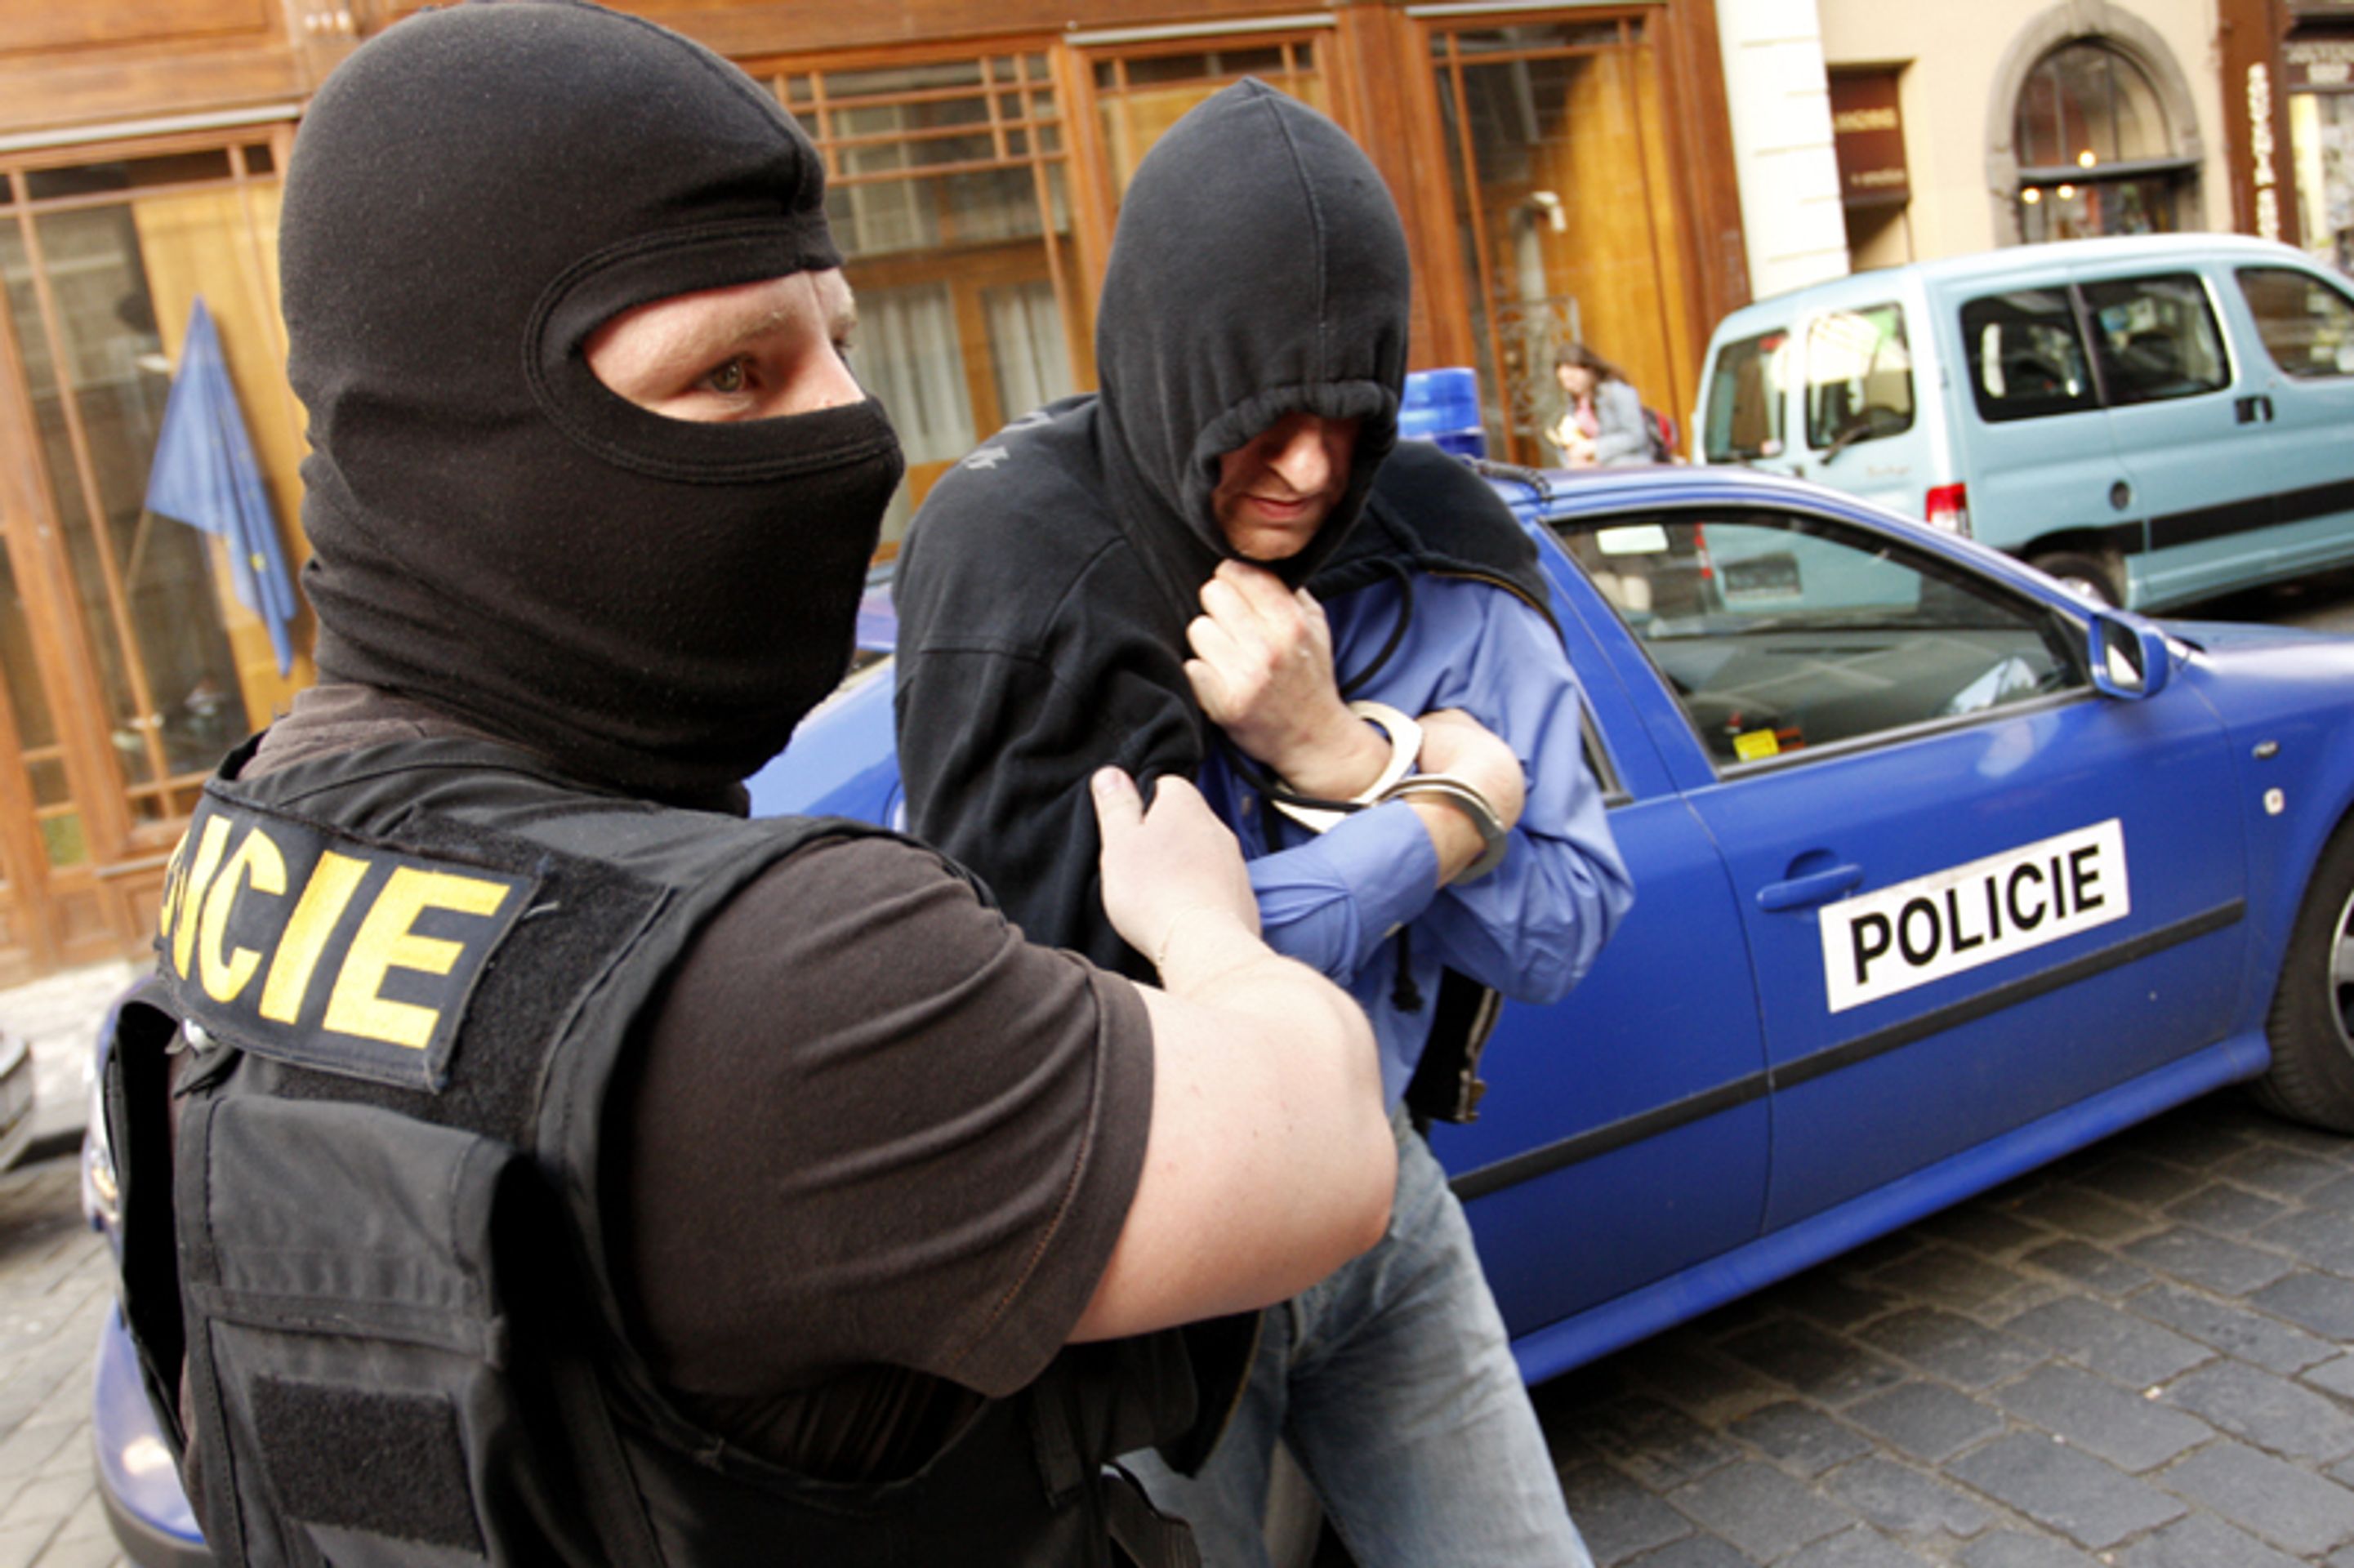 Policie zadržela neonacisty, vyslechla i advokátku Slámovou - FOTOGALERIE: Policisté předvádějí extremisty zadržené při velké razii (18/18)